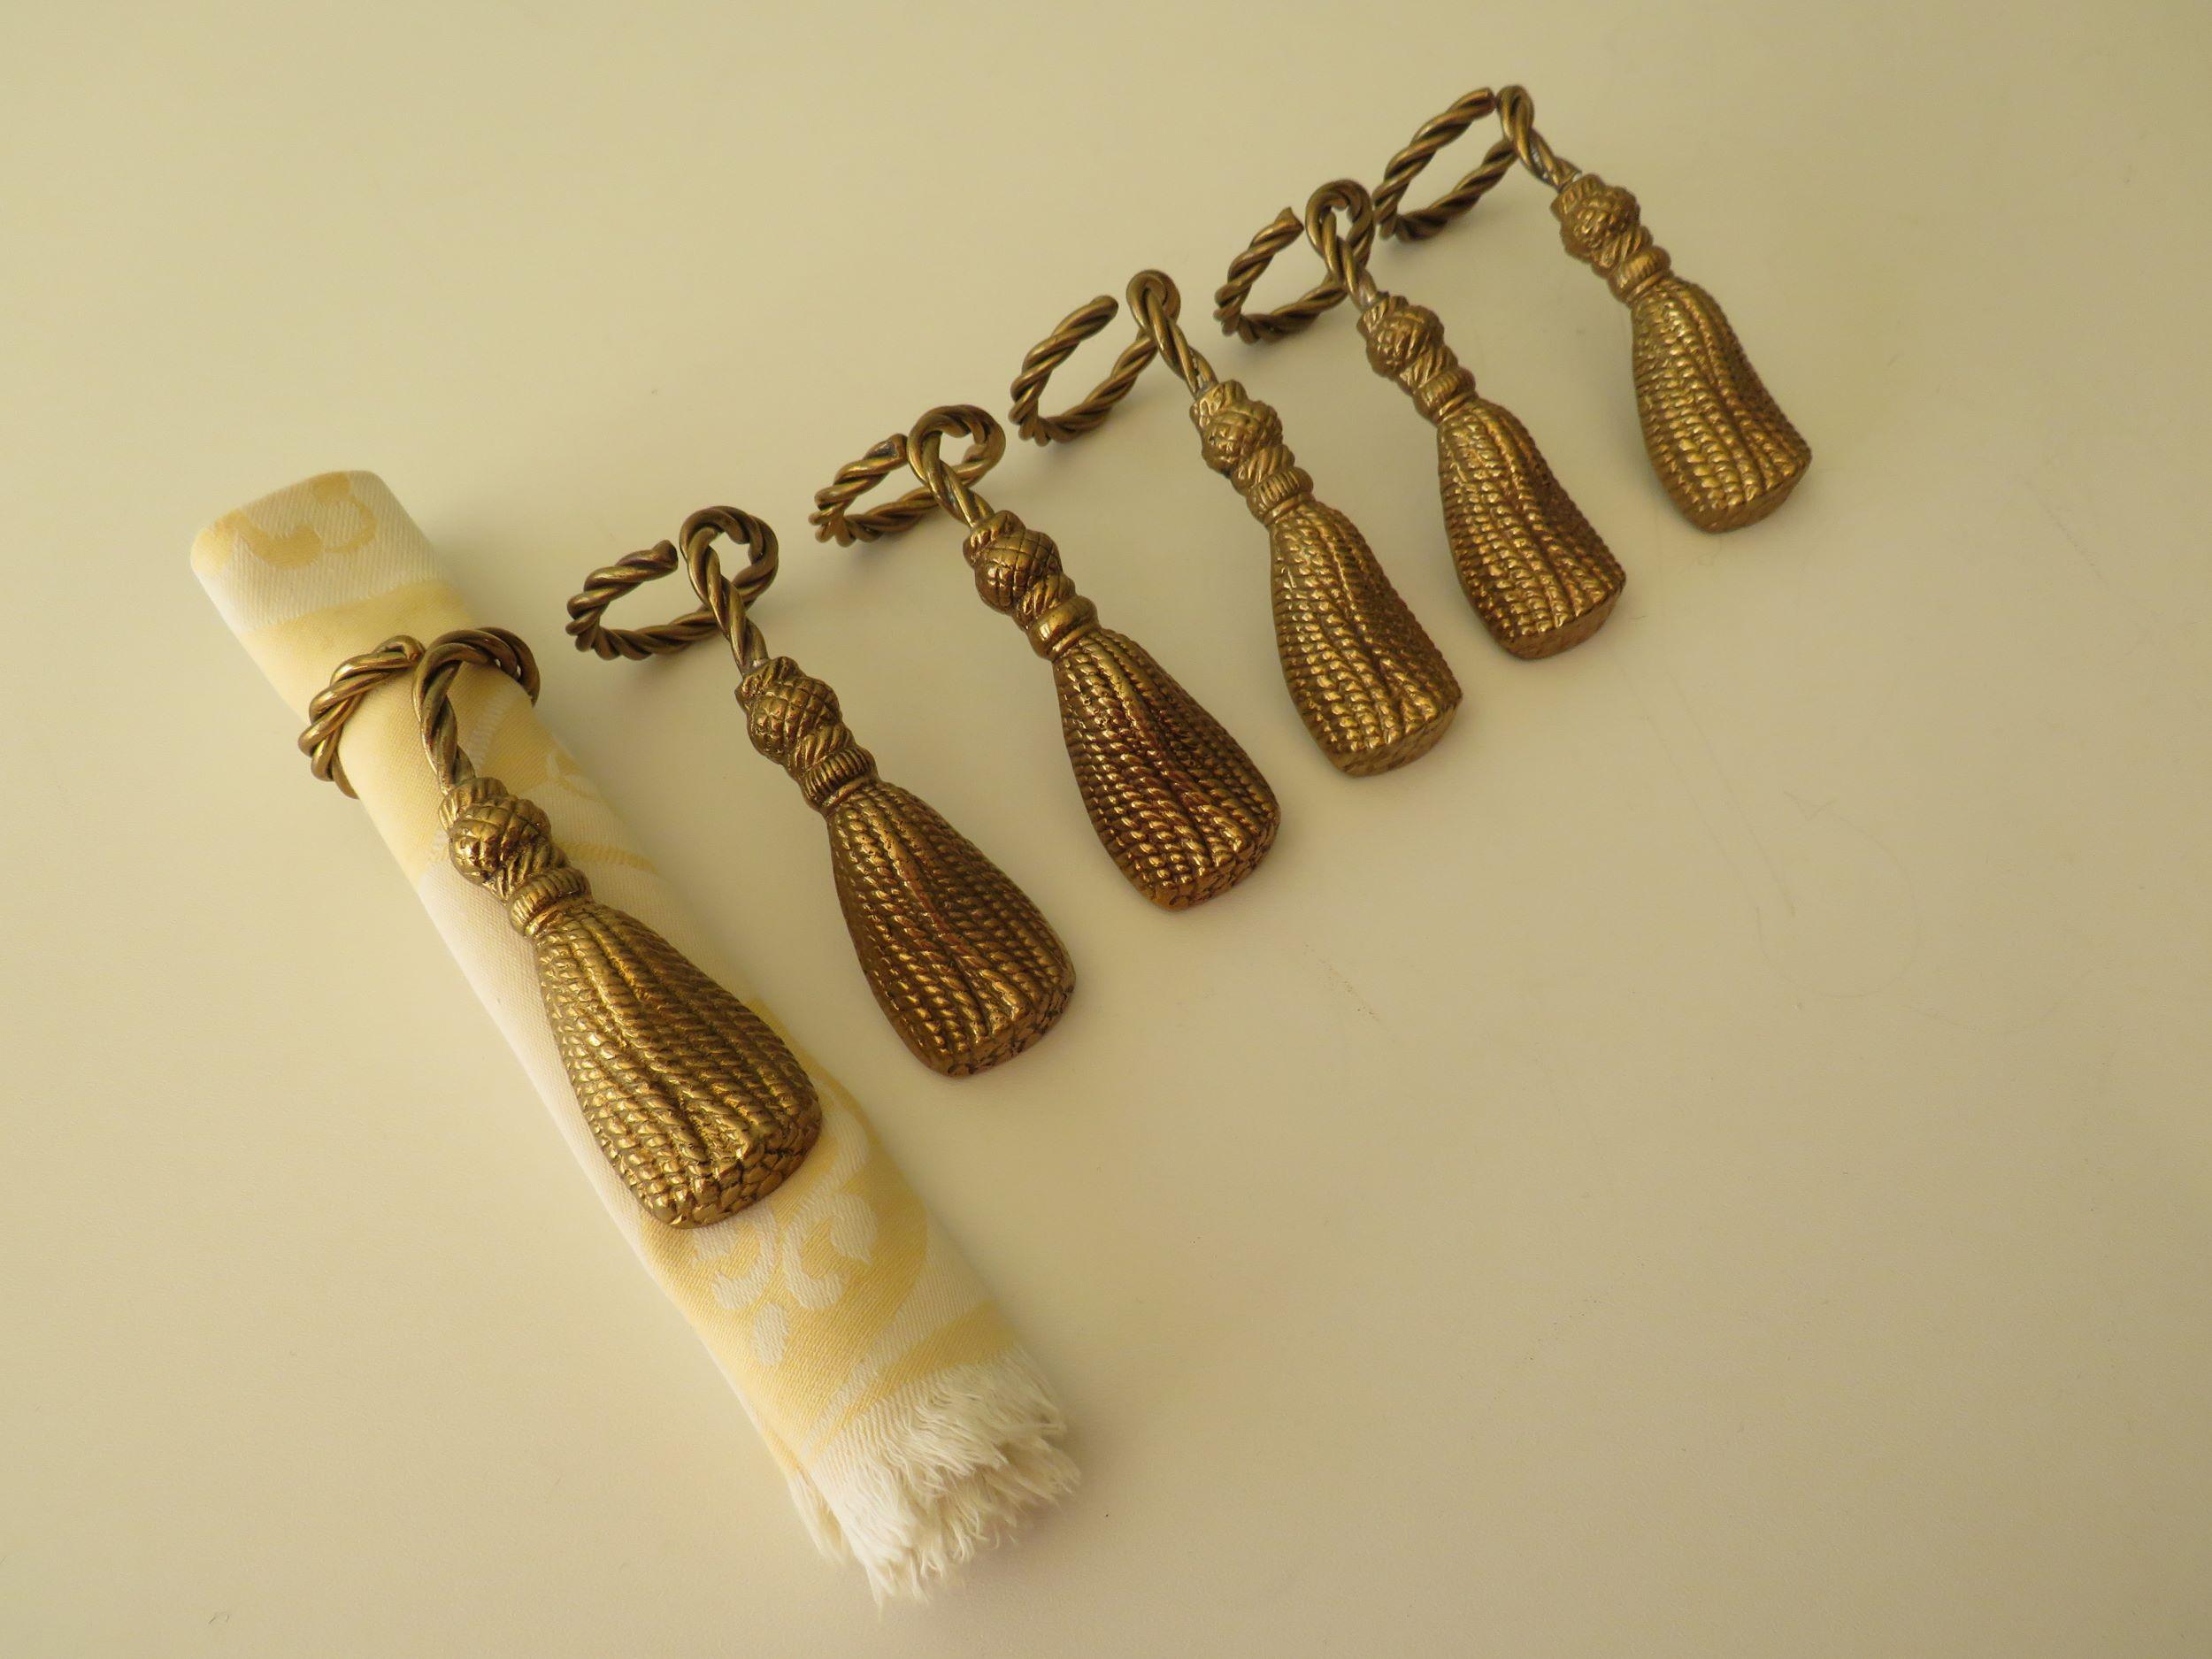 Set of 6 gilded bronze napkin holders.
Total length: 10 cm, diameter of the ring: 4 cm